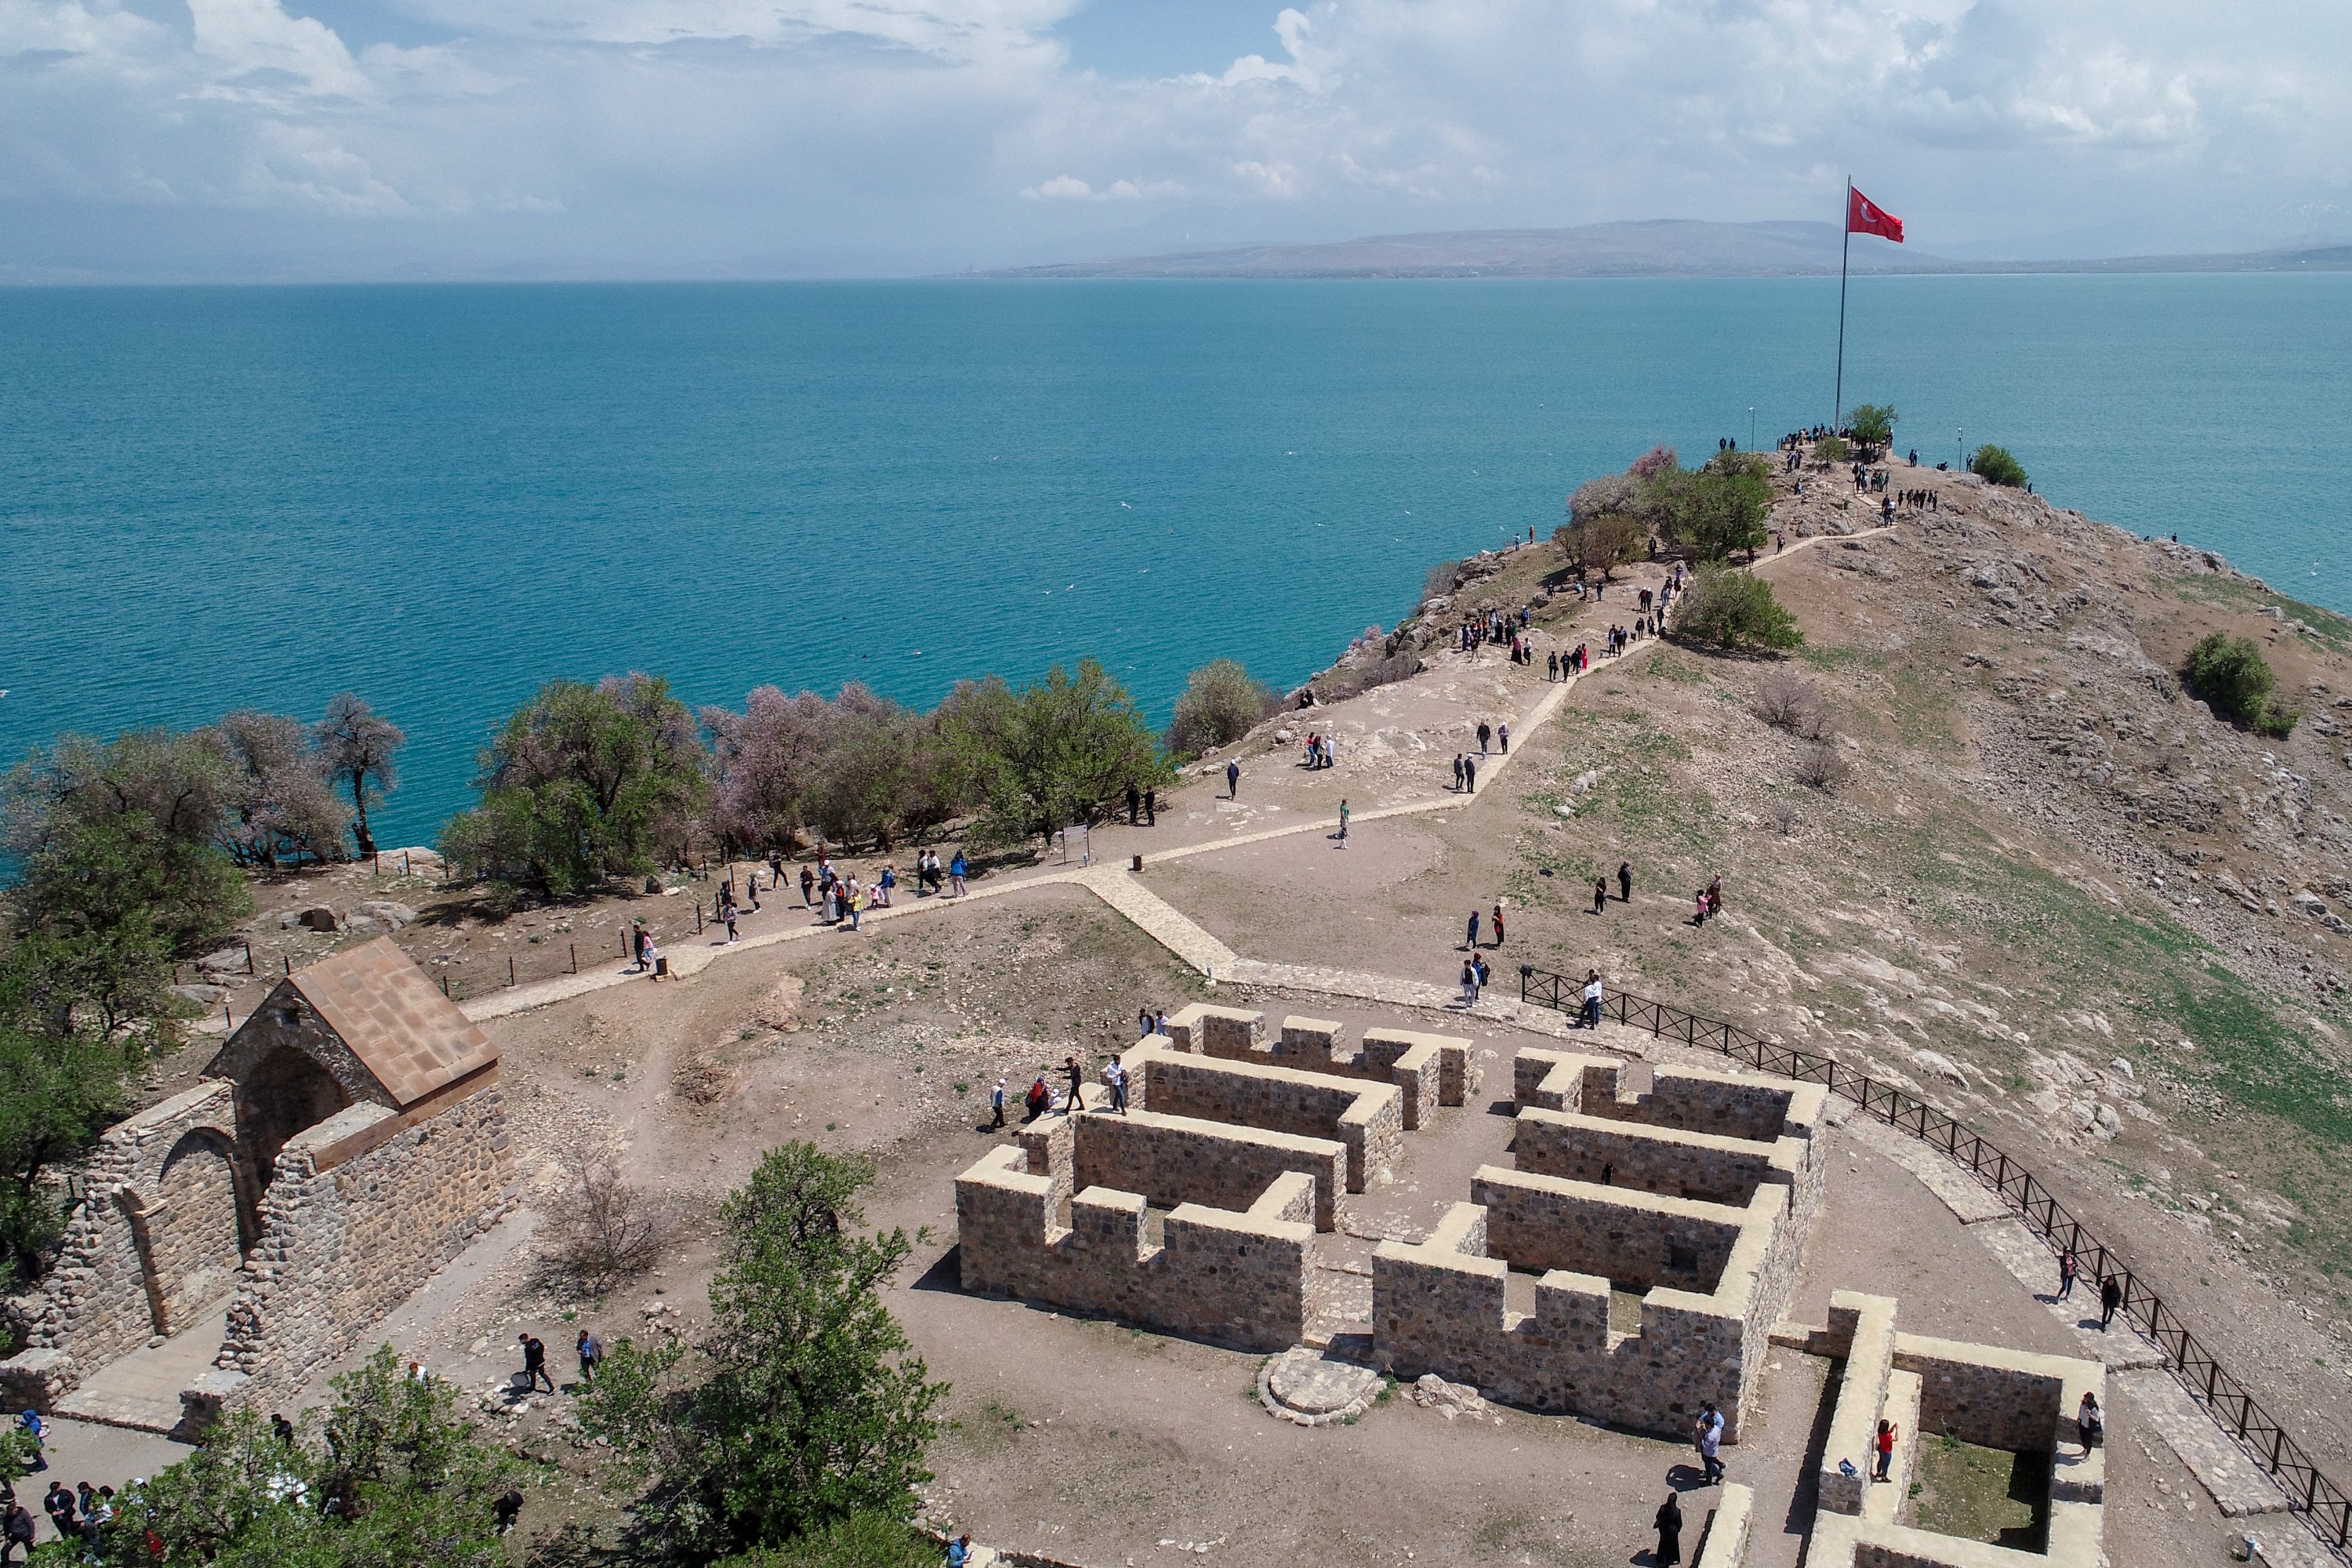 Diselenggarakan oleh Direktorat Provinsi Kebudayaan dan Pariwisata Van di Pulau Akdamar di distrik Gevaş di Van, the 